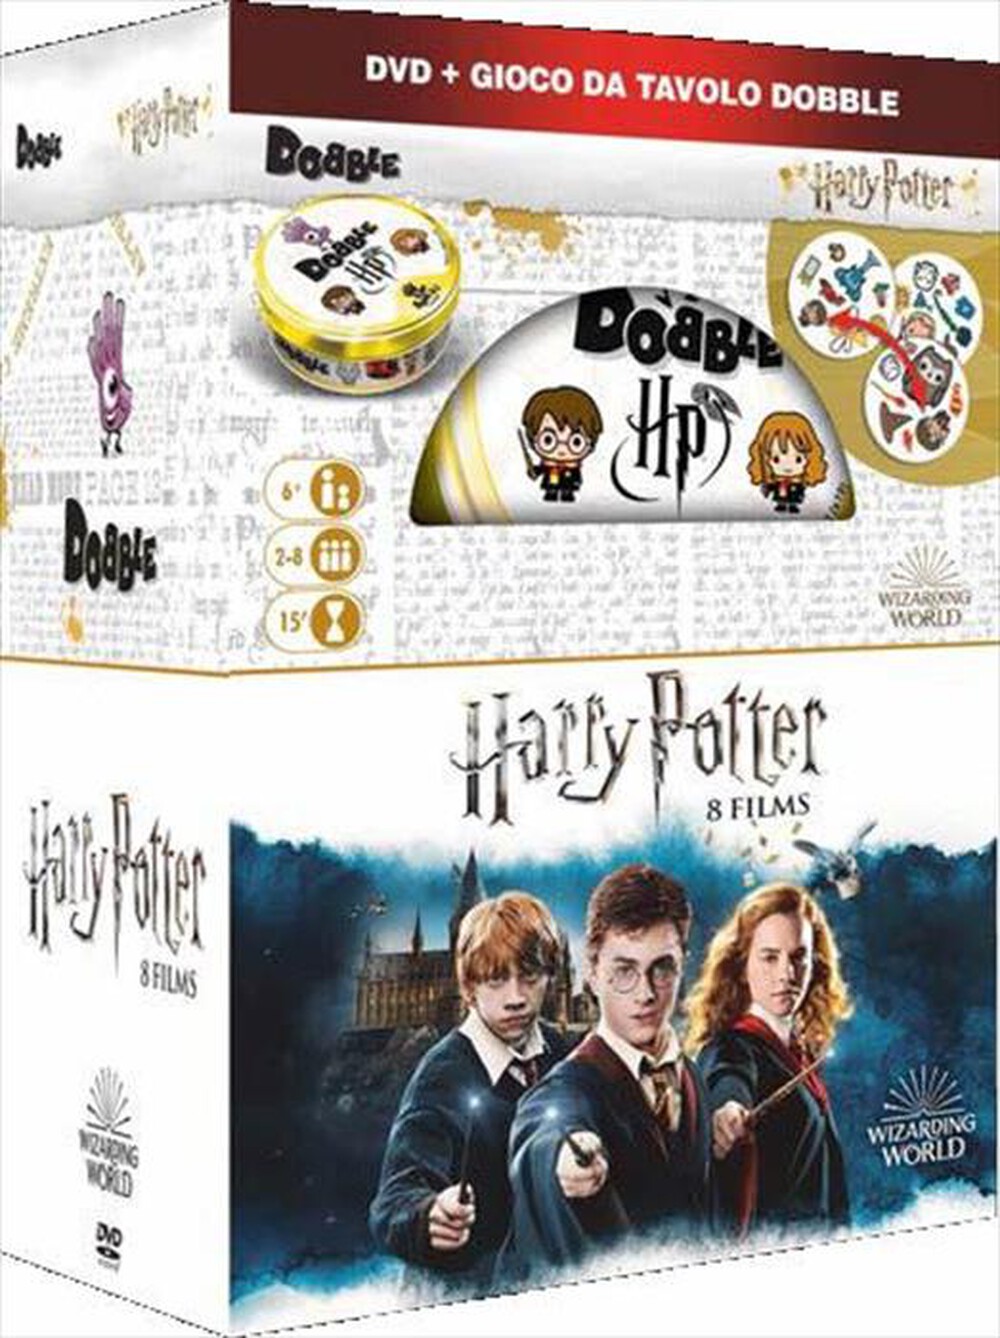 "WARNER HOME VIDEO - Harry Potter - La Collezione Completa (8 Dvd+Gio"